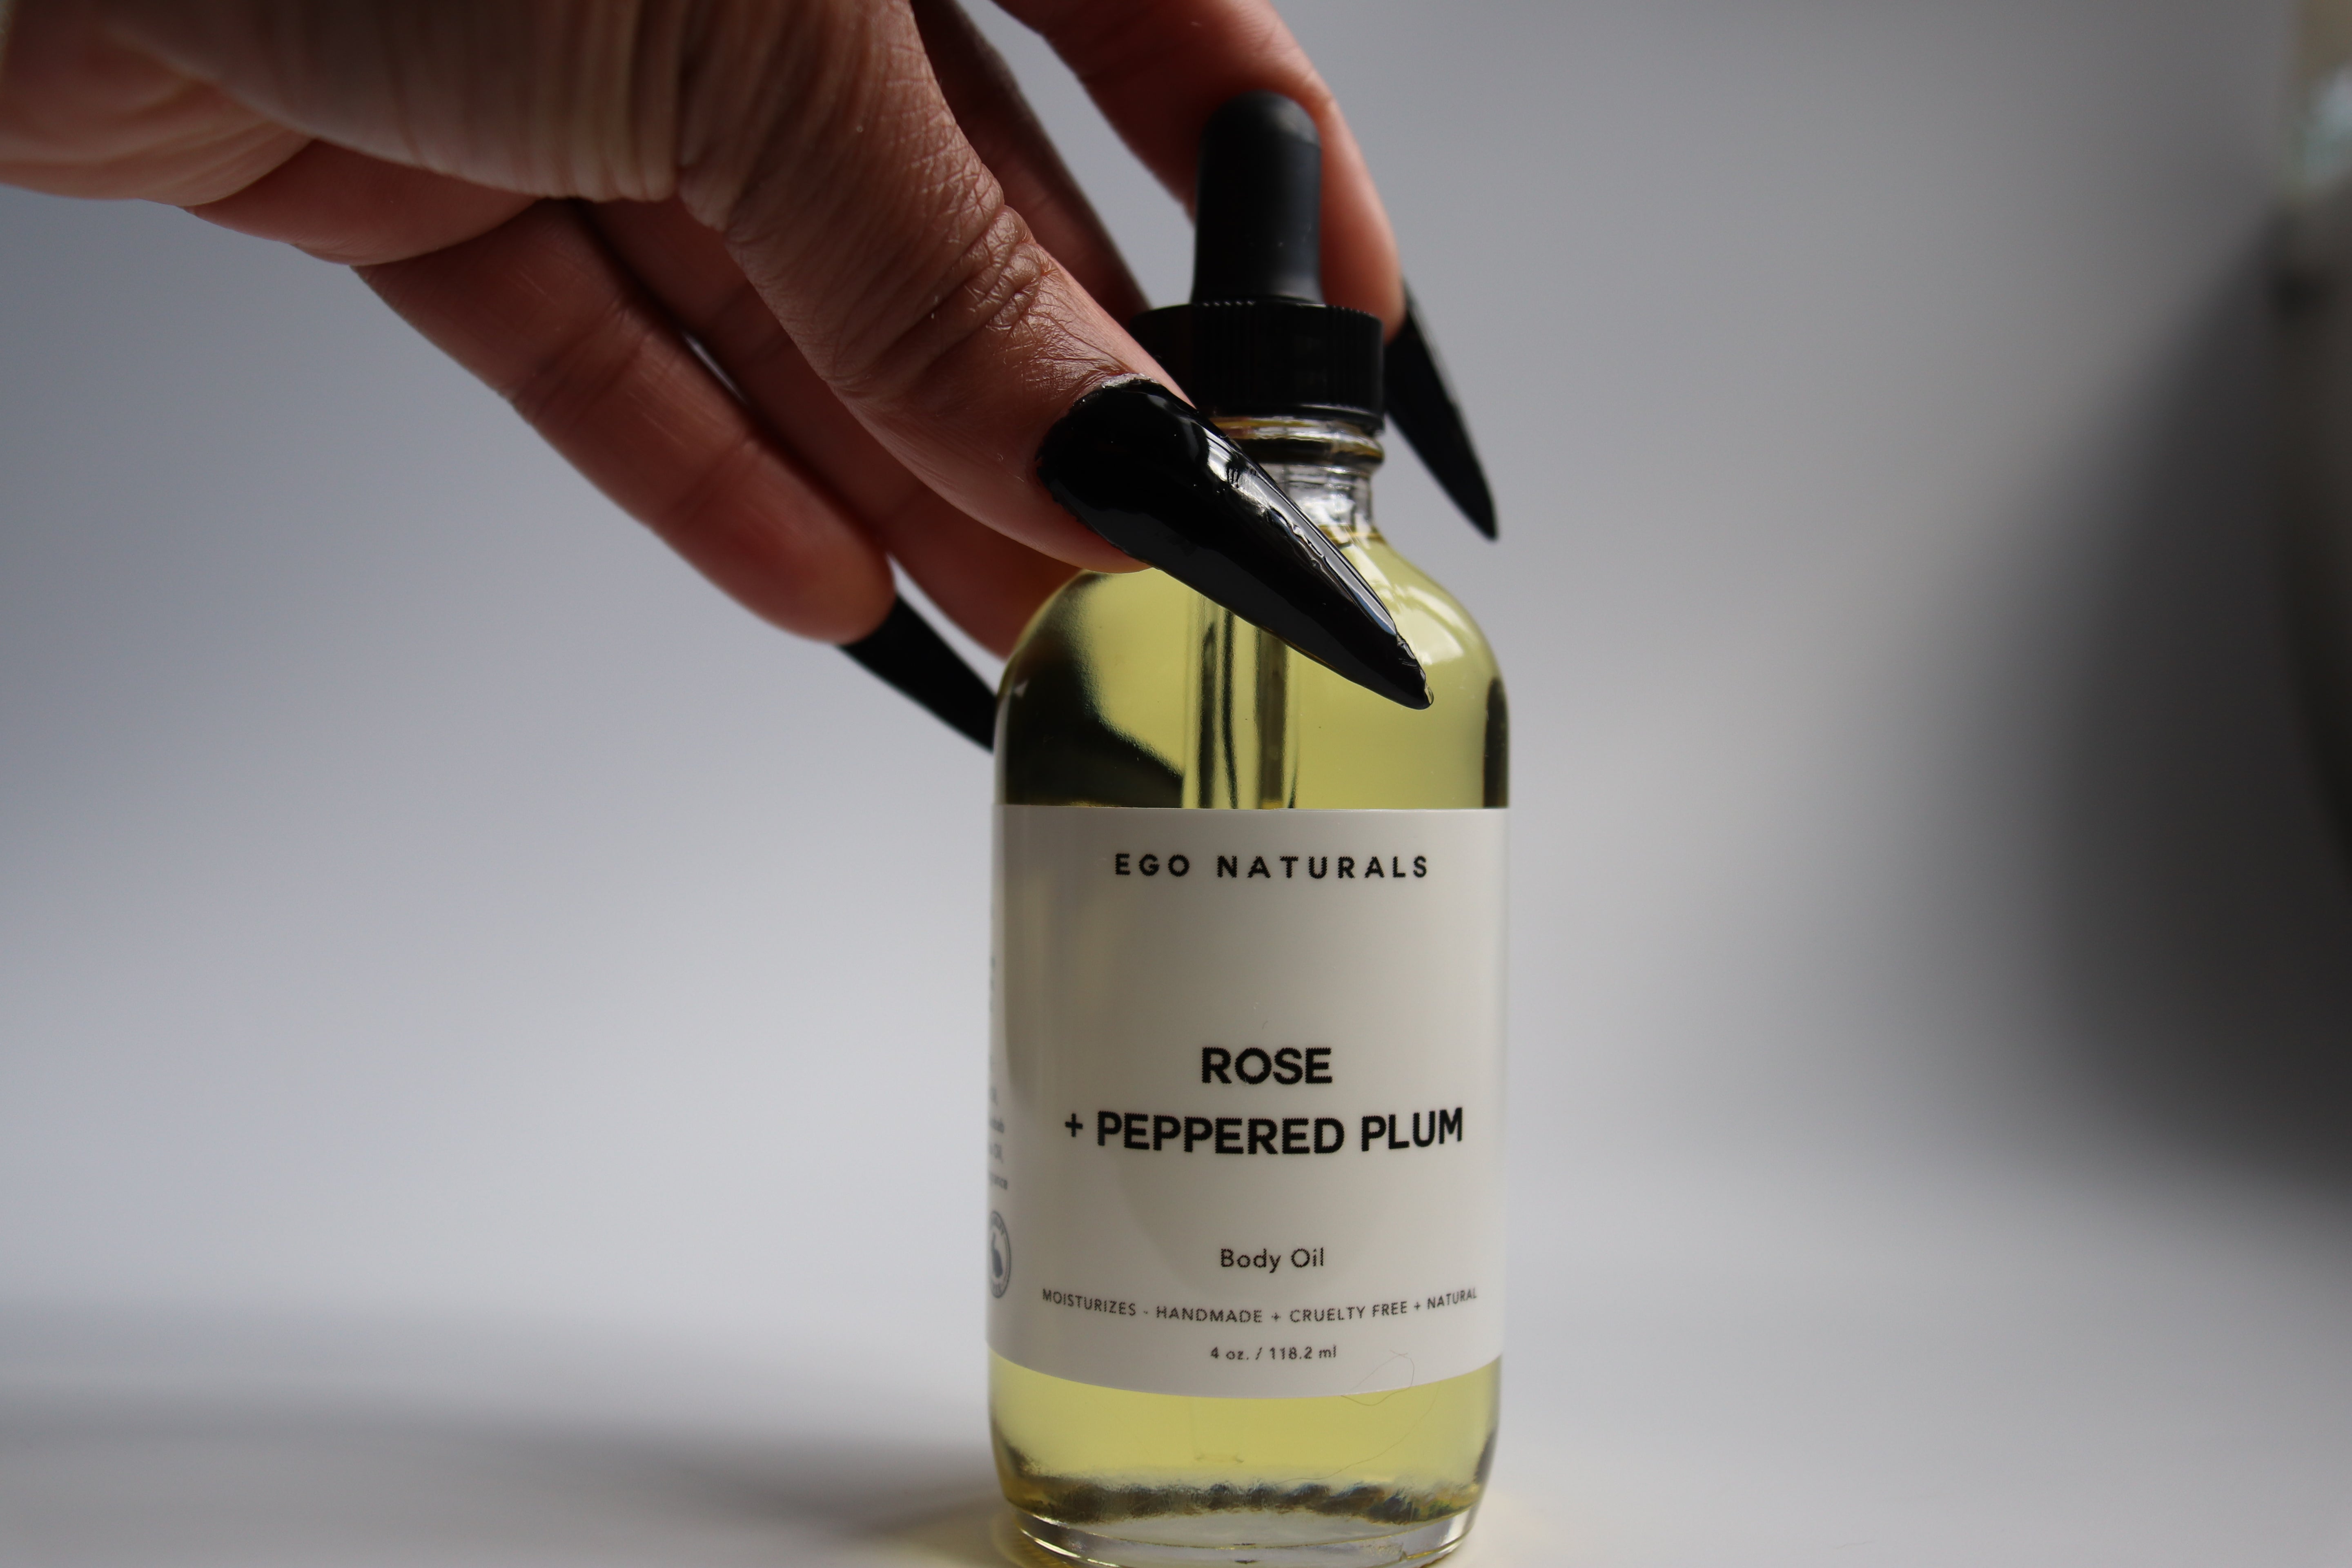 Rose + Peppered Plum Signature Body Oil - Ego Naturals